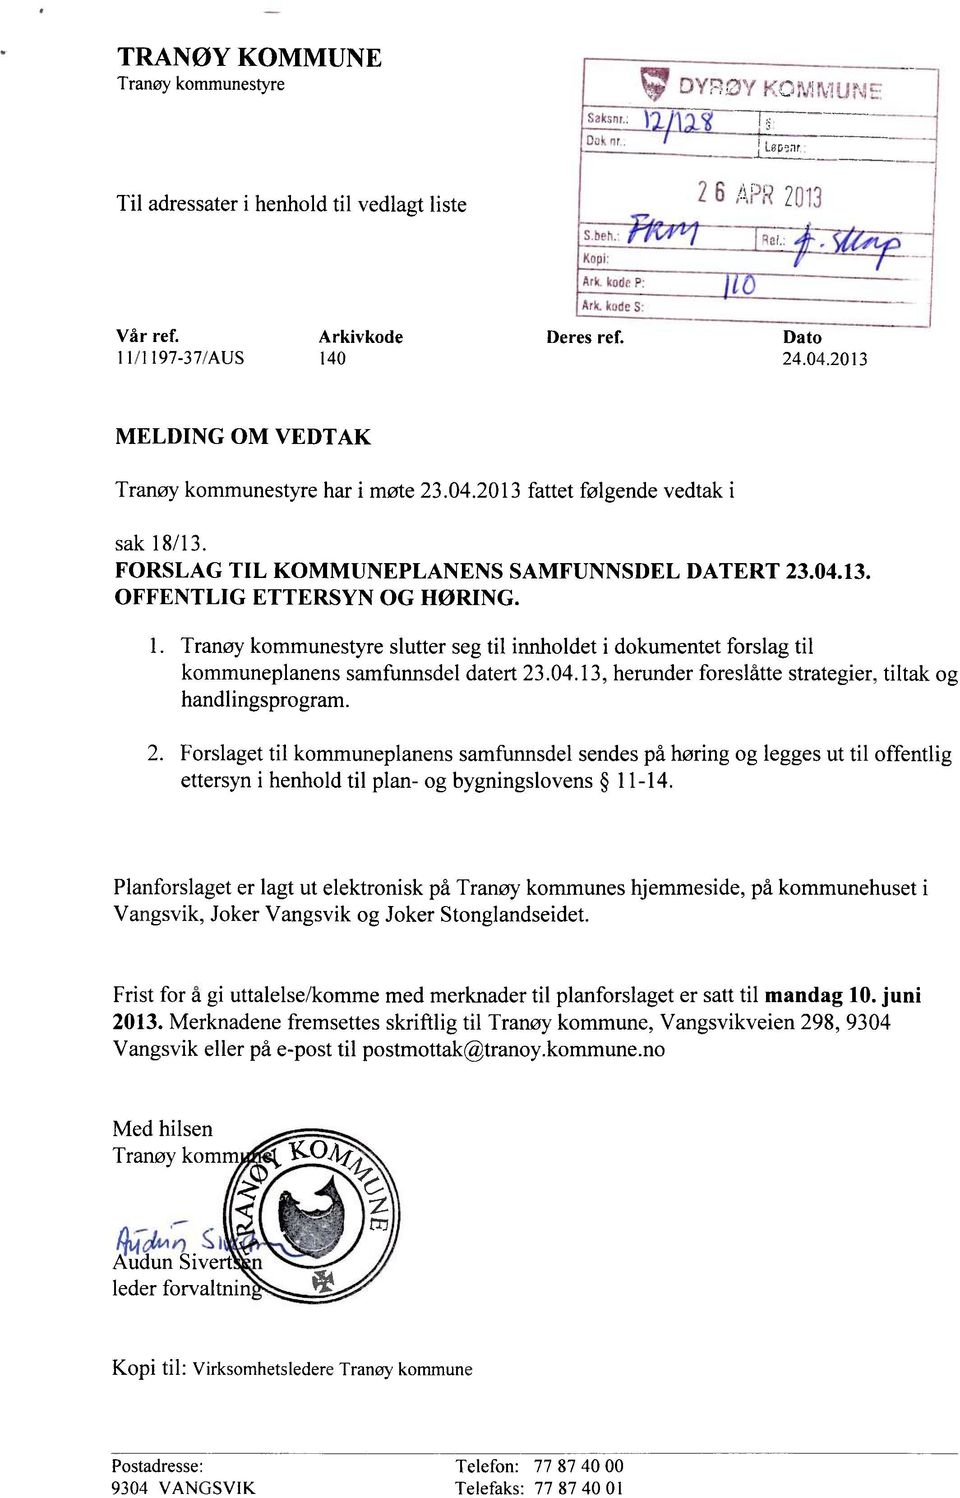 Tranøy kommunestyre slutter seg til innholdet i dokumentet forslag til kommuneplanens samfunnsdel datert 23.04.13, herunder foreslåtte strategier, tiltak og handlingsprogram.